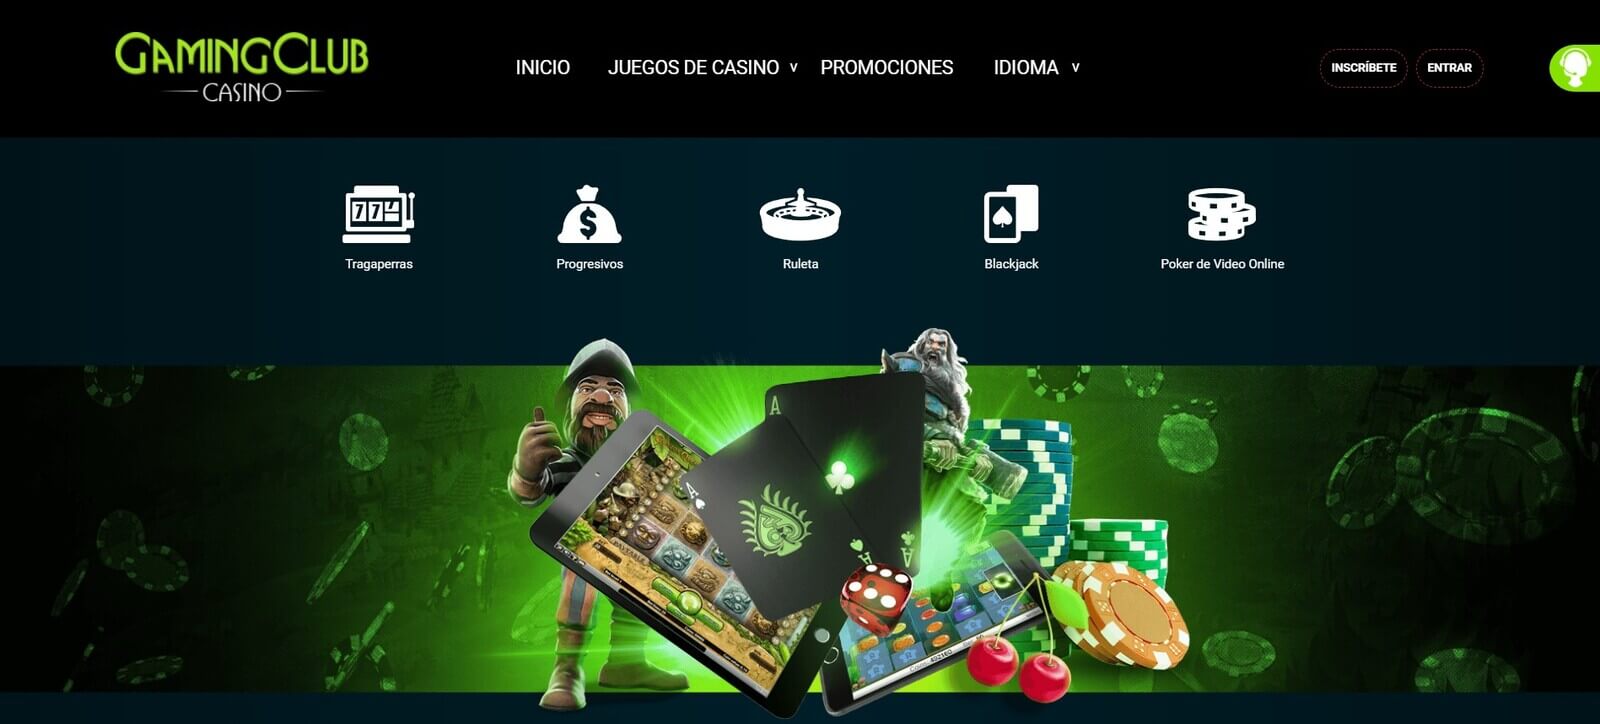 Gaming Club Casino   Mejores juegos de casino online Gaming Club